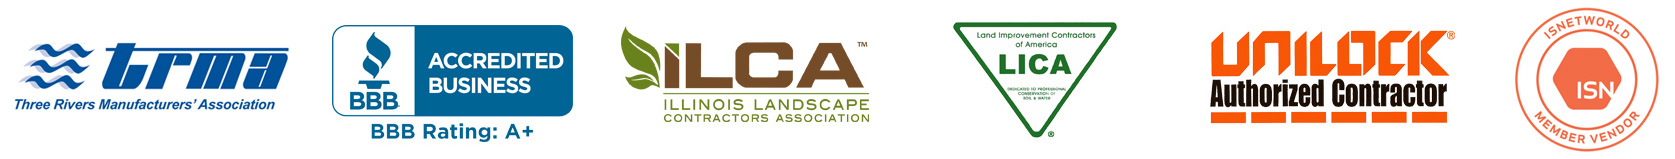 Country Landscape Supply Commercial, Premier Landscape Contractors Inc Lemont Il